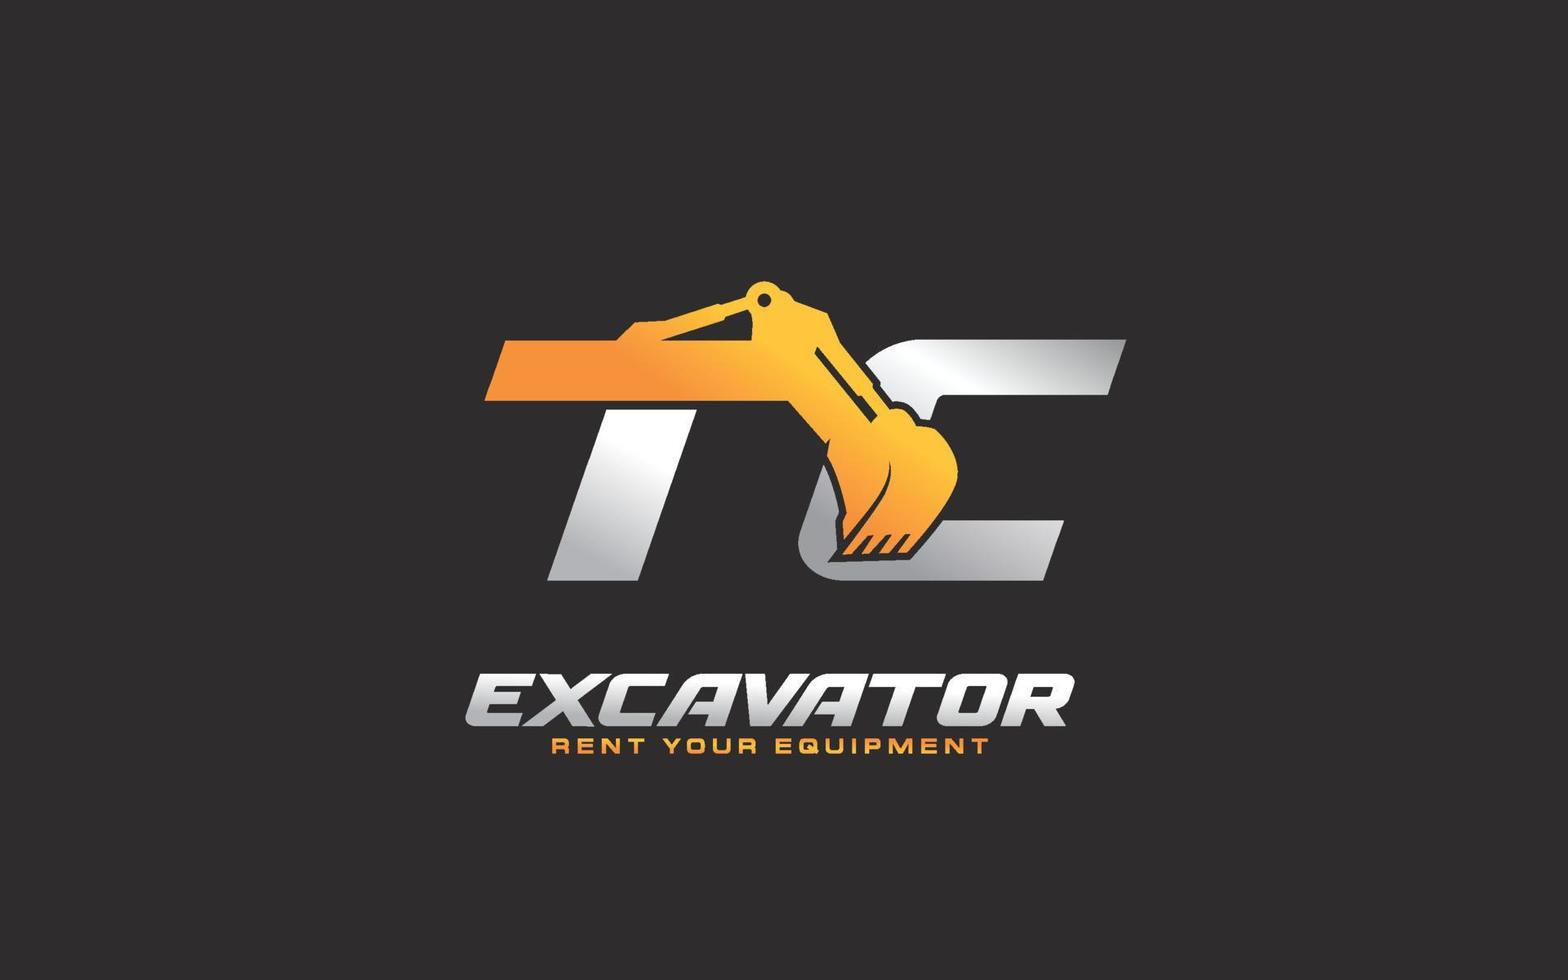 Excavadora de logotipo tc para empresa constructora. ilustración de vector de plantilla de equipo pesado para su marca.